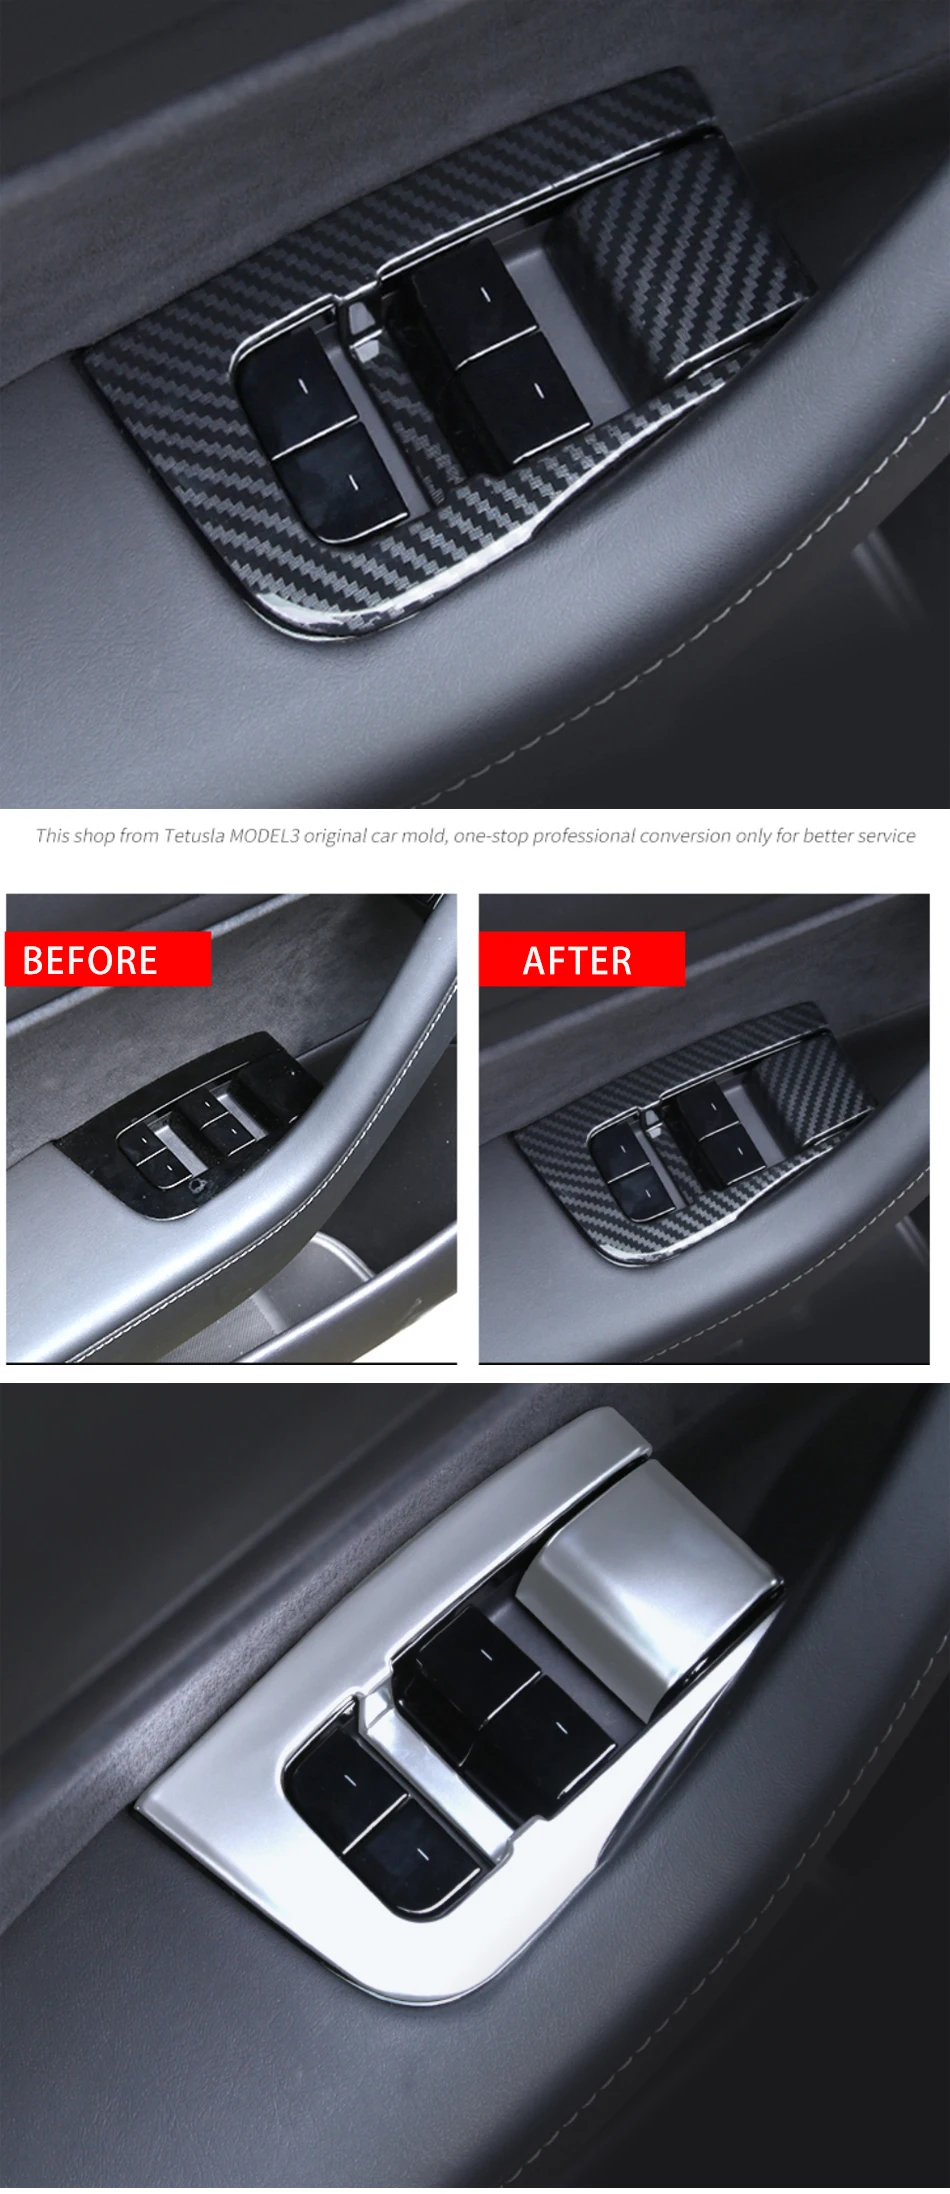 Авто ABS стеклоподъемник переключатели декоративная рамка Крышка отделка наклейка для Tesla модель 3- автомобильные аксессуары интерьер